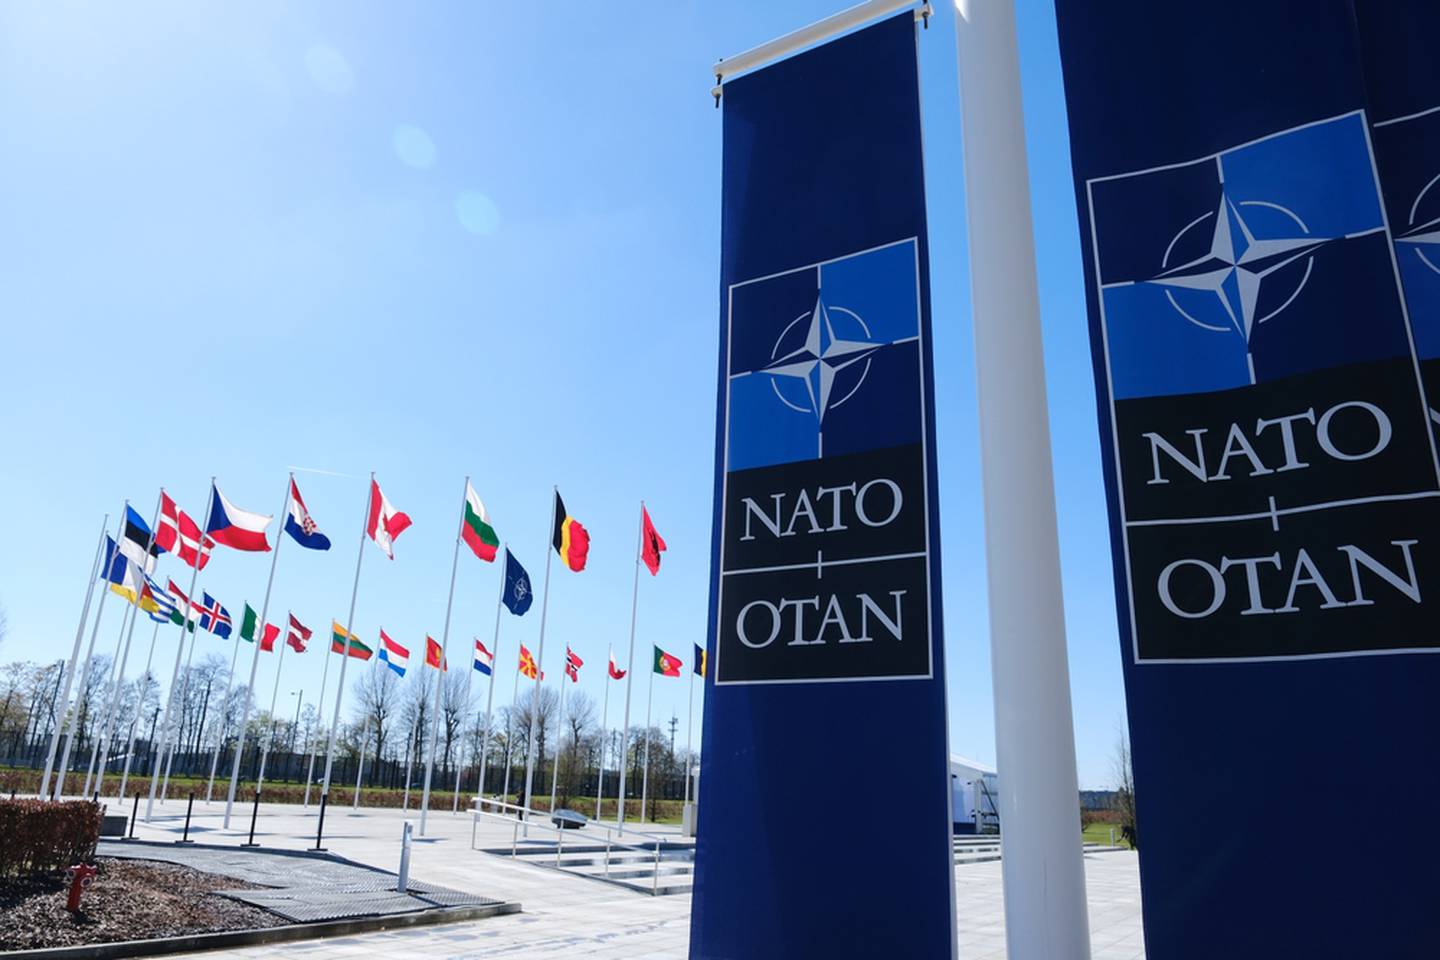 NATO, OTAN